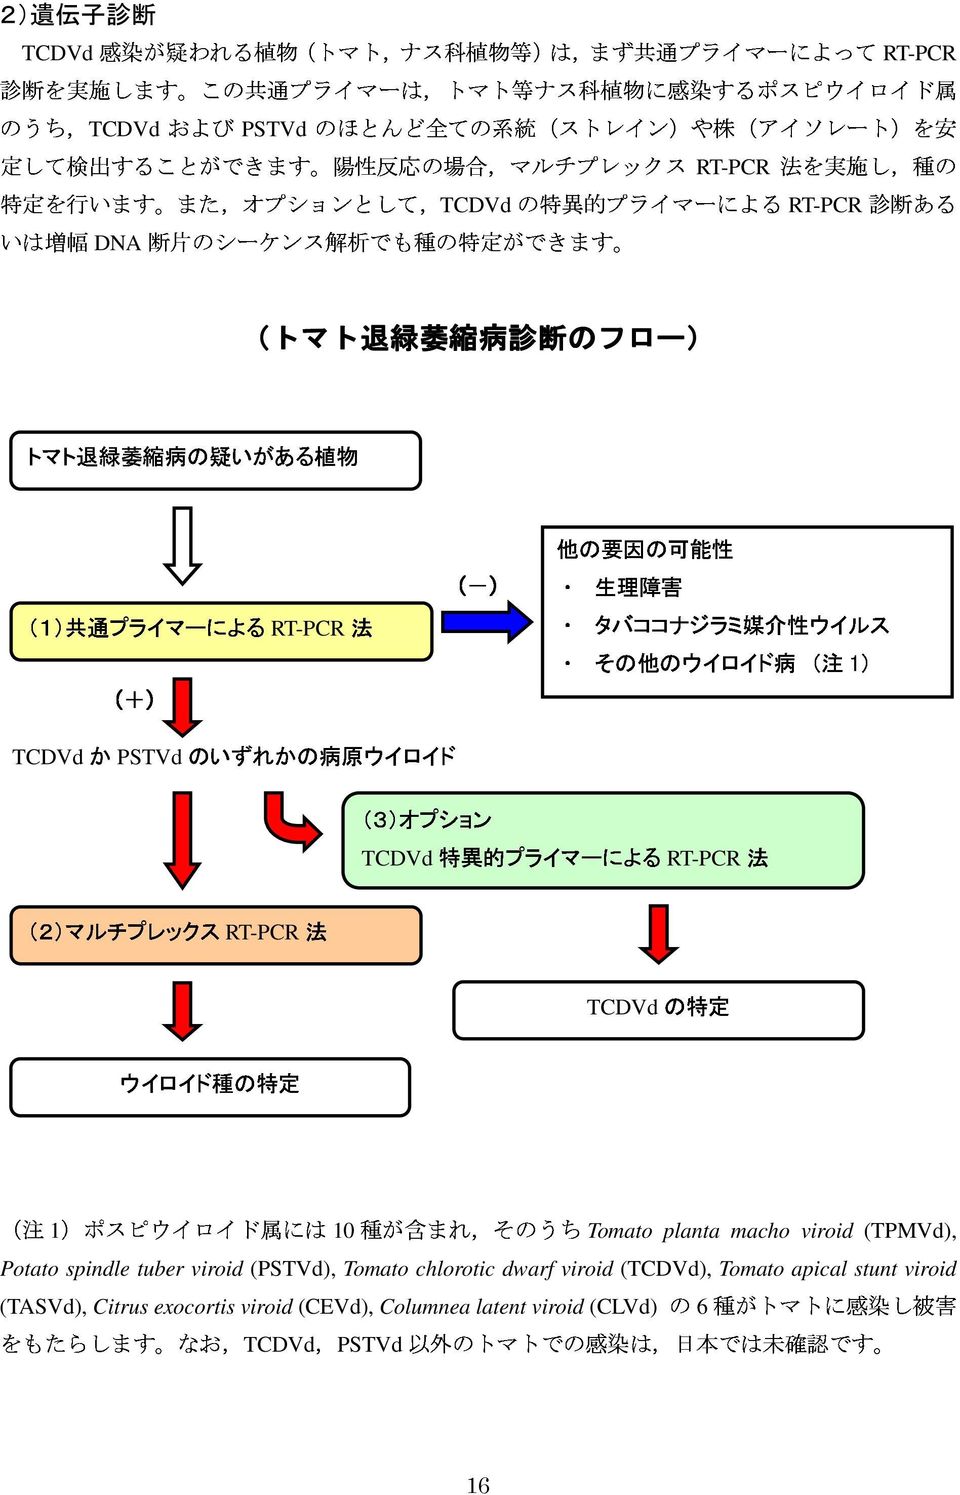 その 他 のウイロイド 媒 介 病 性 ウイルス TCDVdかPSTVdのいずれかの () 病 原 ウイロイド ( 注 1) プライマーによるRTPCR (3)オプション 法 特 異 的 法 TCDVd プライマーによるRTPCR ウイロイド 種 の 特 定 定 (2)マルチプレックスRTPCR ( 注 1)ポスピウイロイド 属 種 が 含 以 外 のトマトでの 感 染 は, 日 本 では